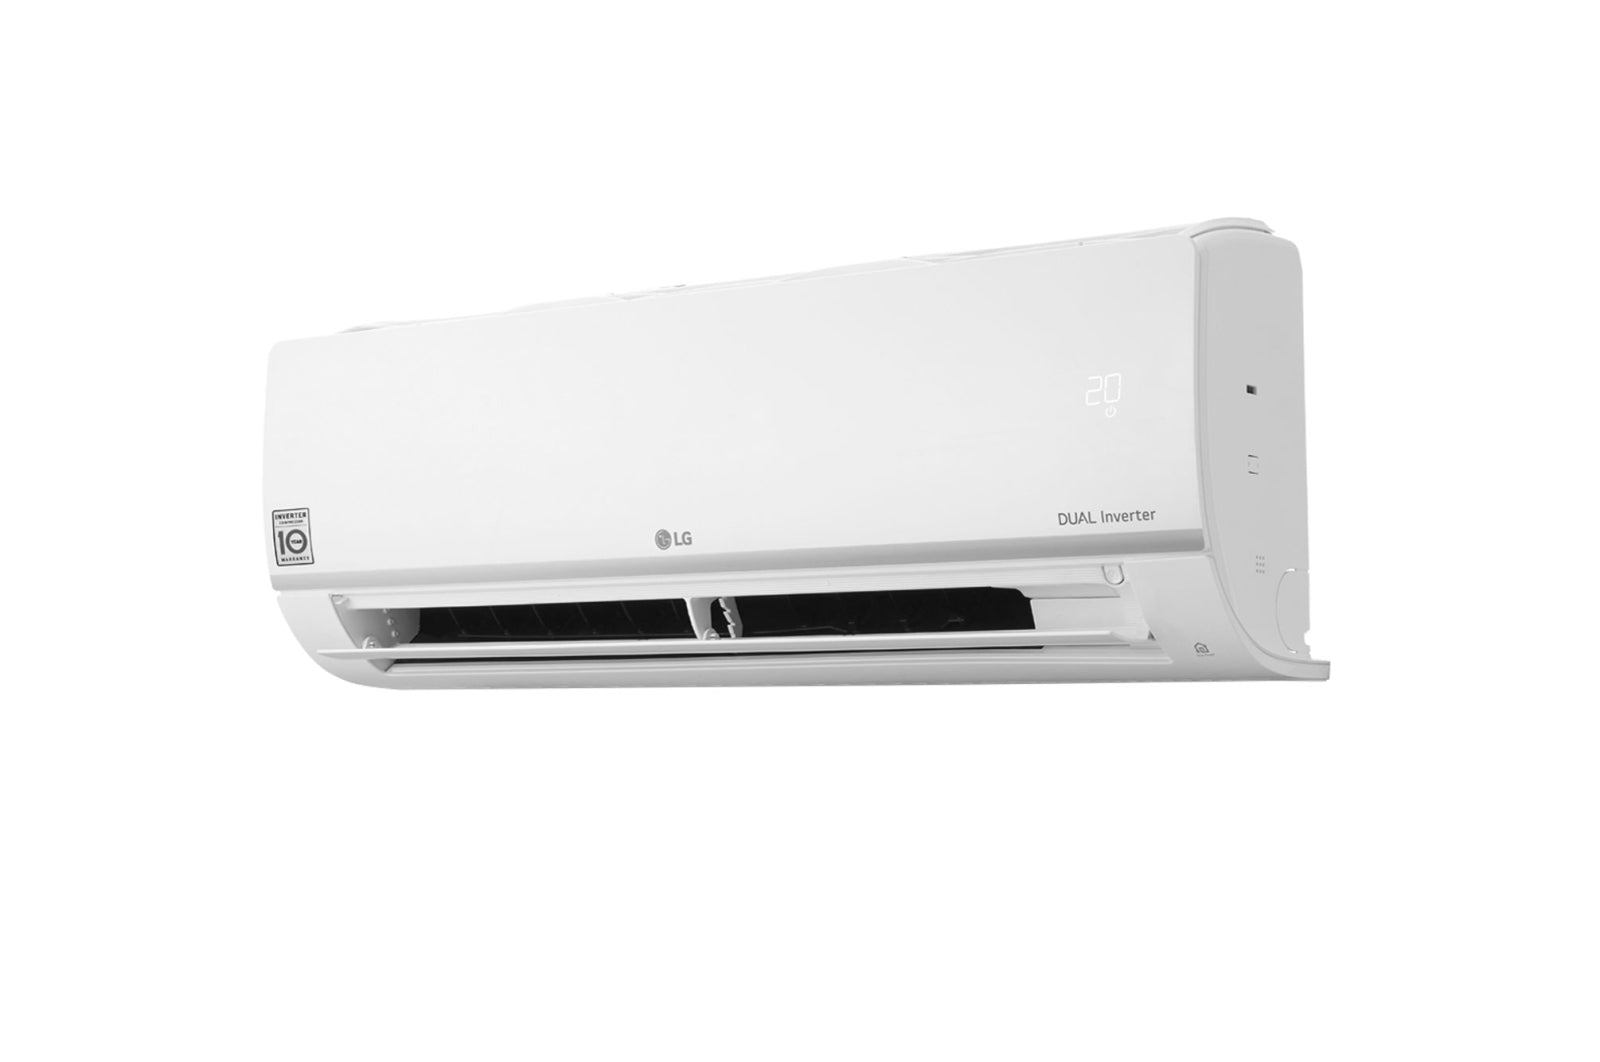 Multi Split Klimaanlage LG 2x Innengerät Standard Plus PC12SK 3,5 kW + –  warm&cold DE